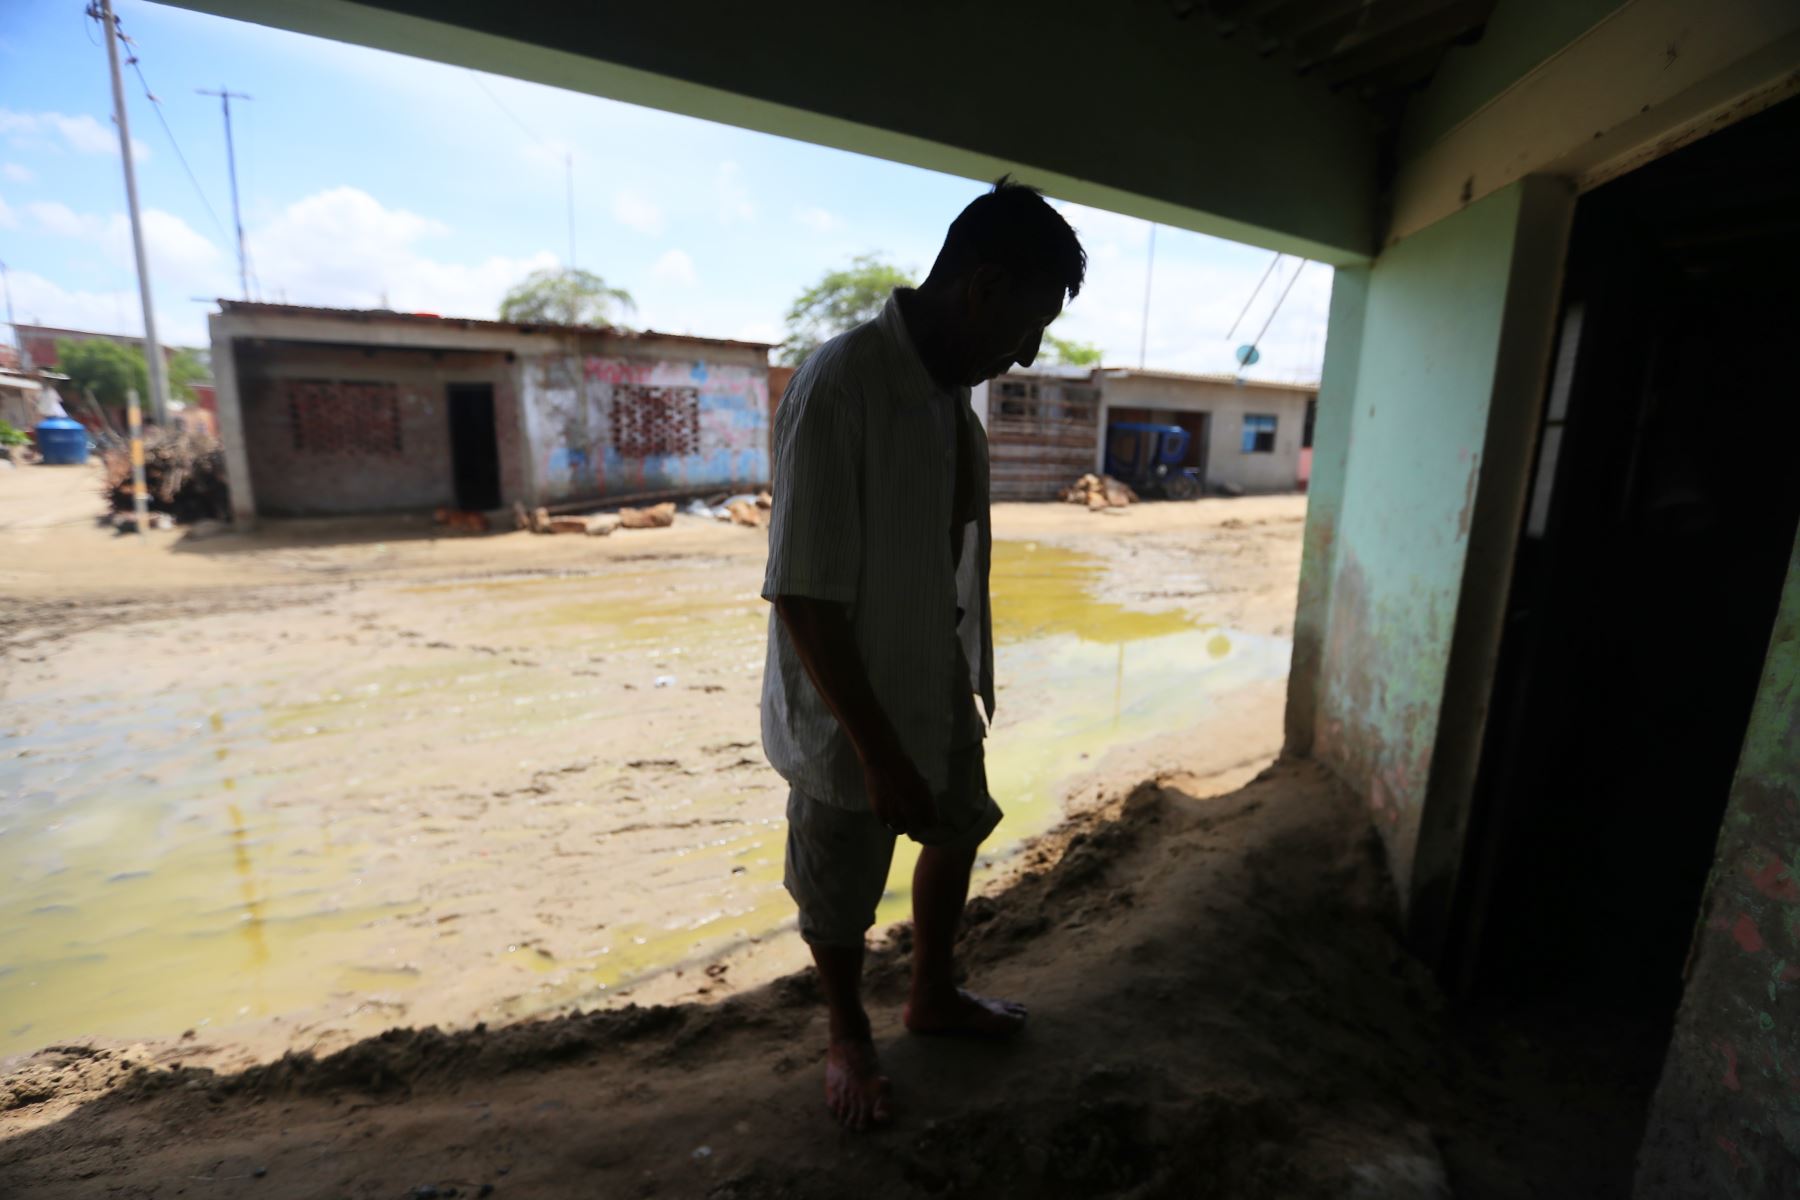 El Centro Poblado Pedregal Chico de Piura que fue afectado por el niño costero en el 2017 vuelve a ser víctima de las lluvias por el ciclón Yaku, dejando viviendas y calles llenas de lodo y con agua estancada.

Foto: ANDINA/Ricardo Cuba